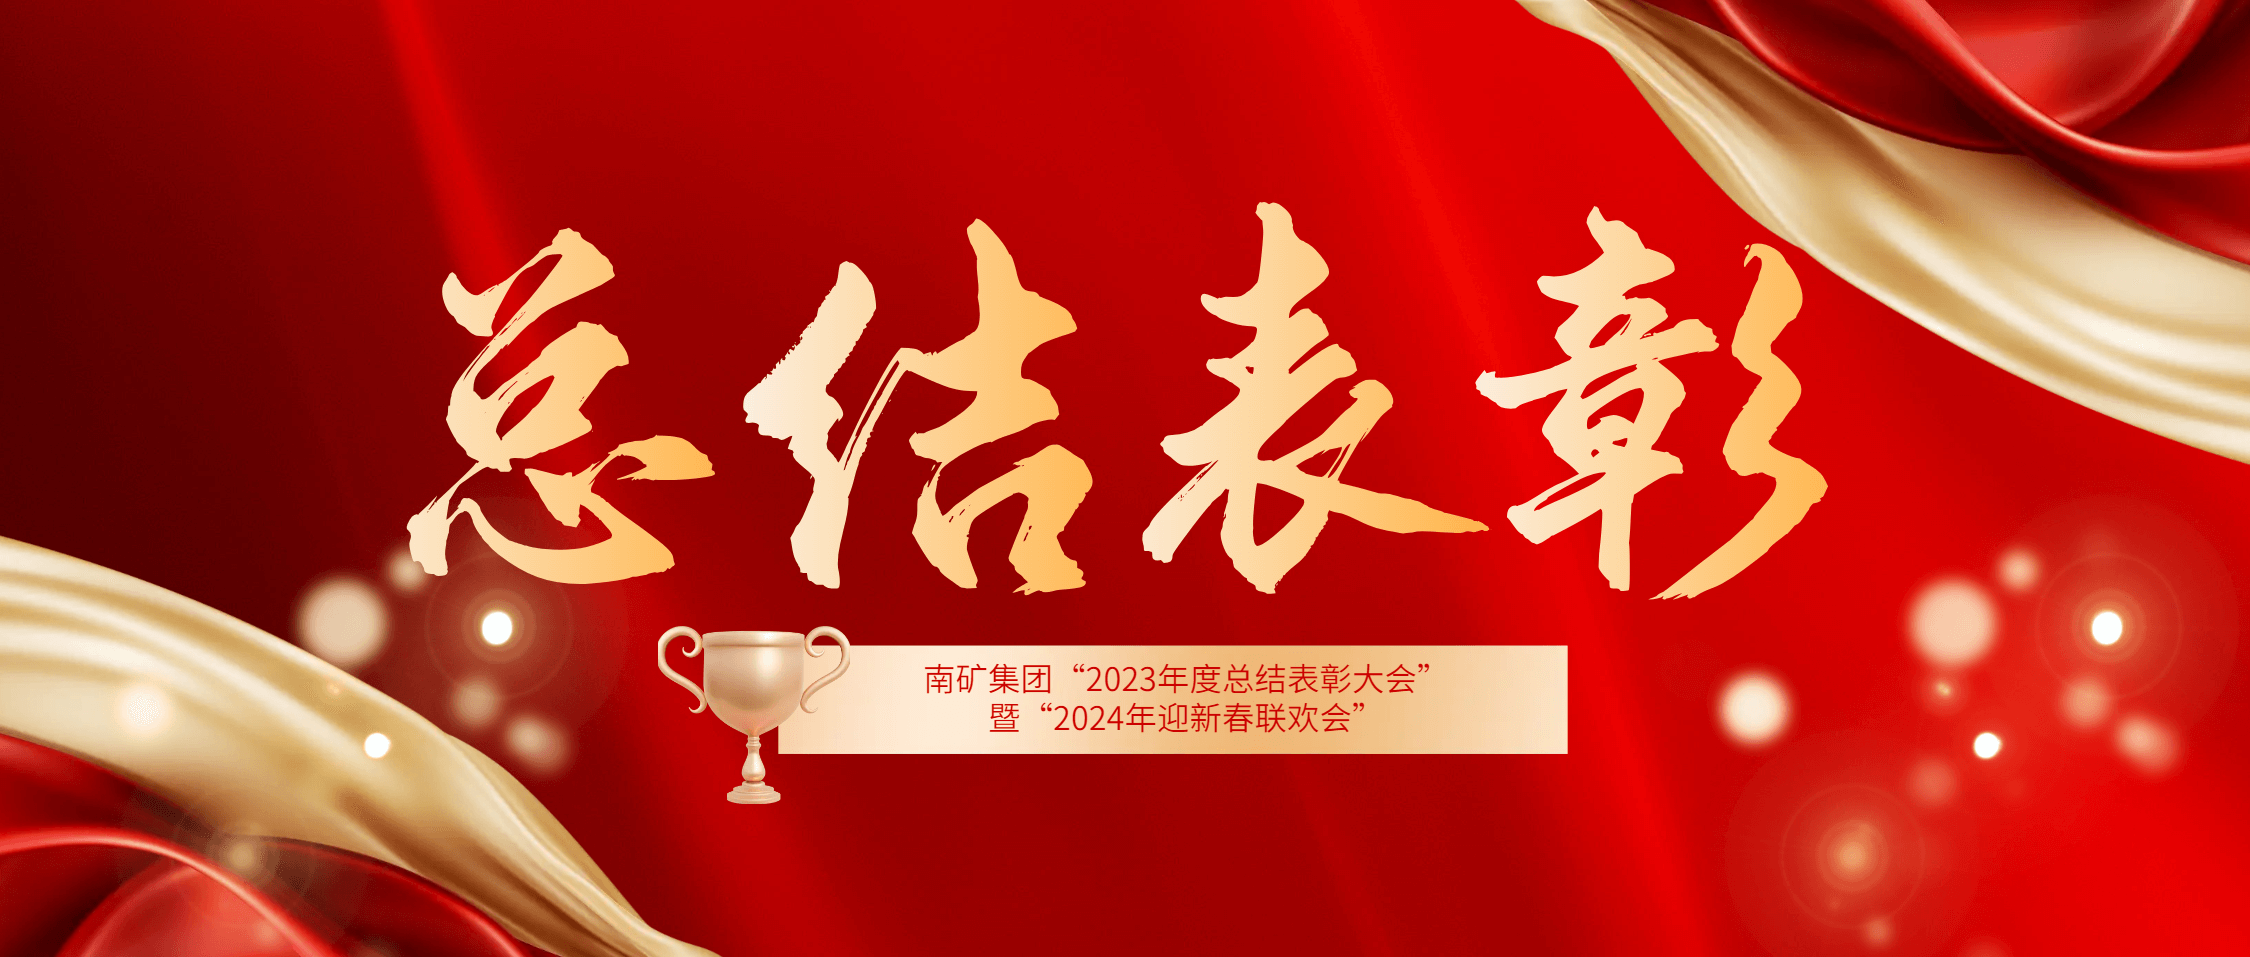 尊龙凯时集团2023年度总结表彰大会暨2024年迎新春联欢会圆满举办